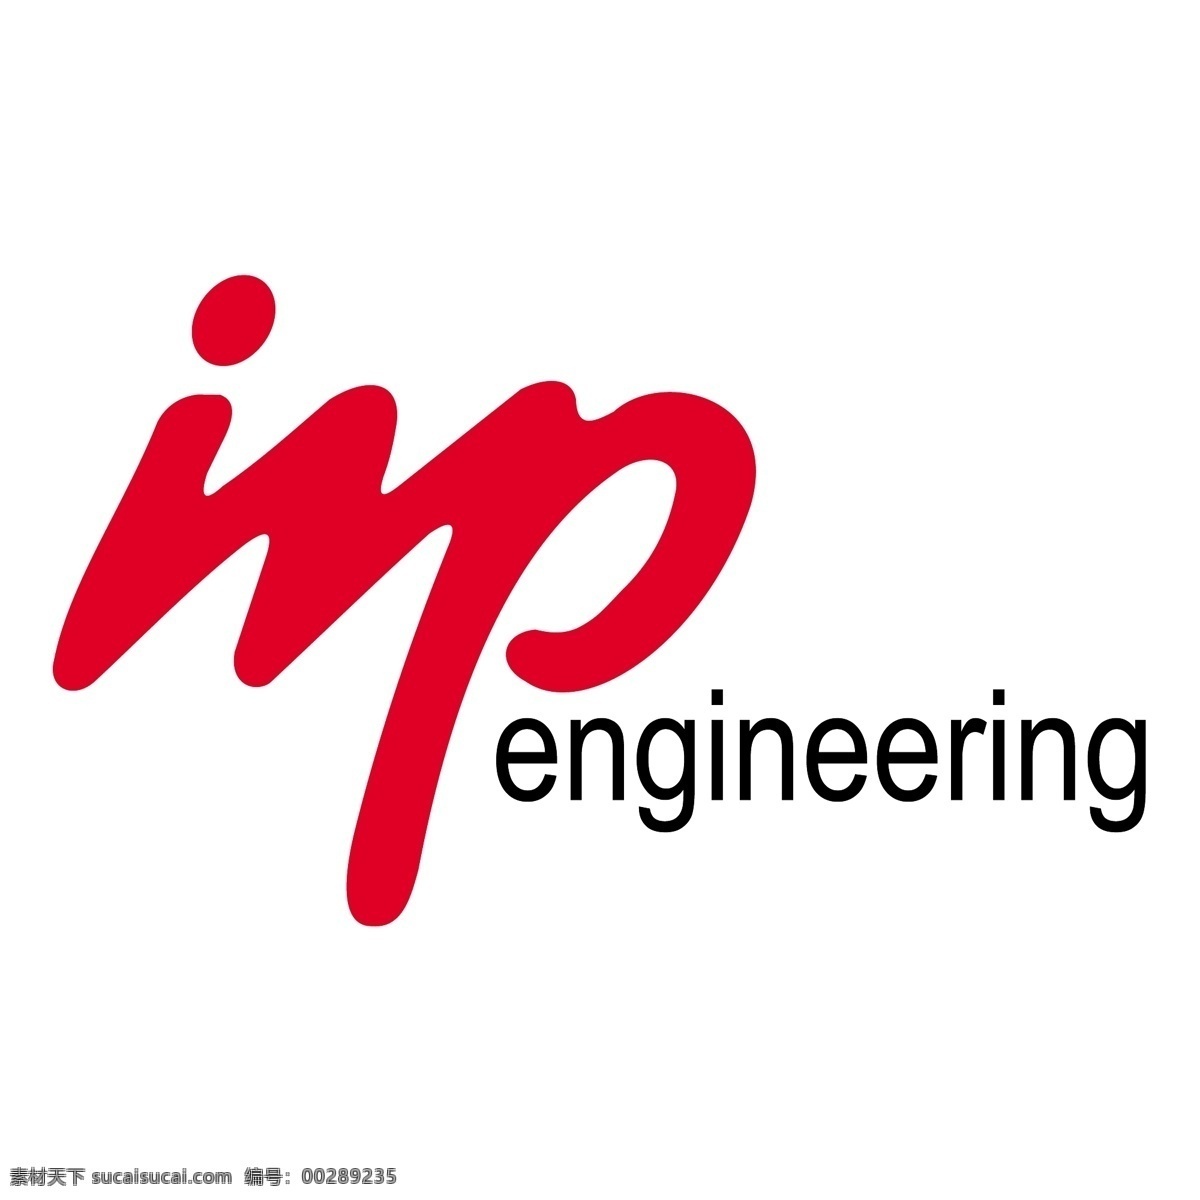 重要 工程 自由 进出口 标识 imp 标志 psd源文件 logo设计